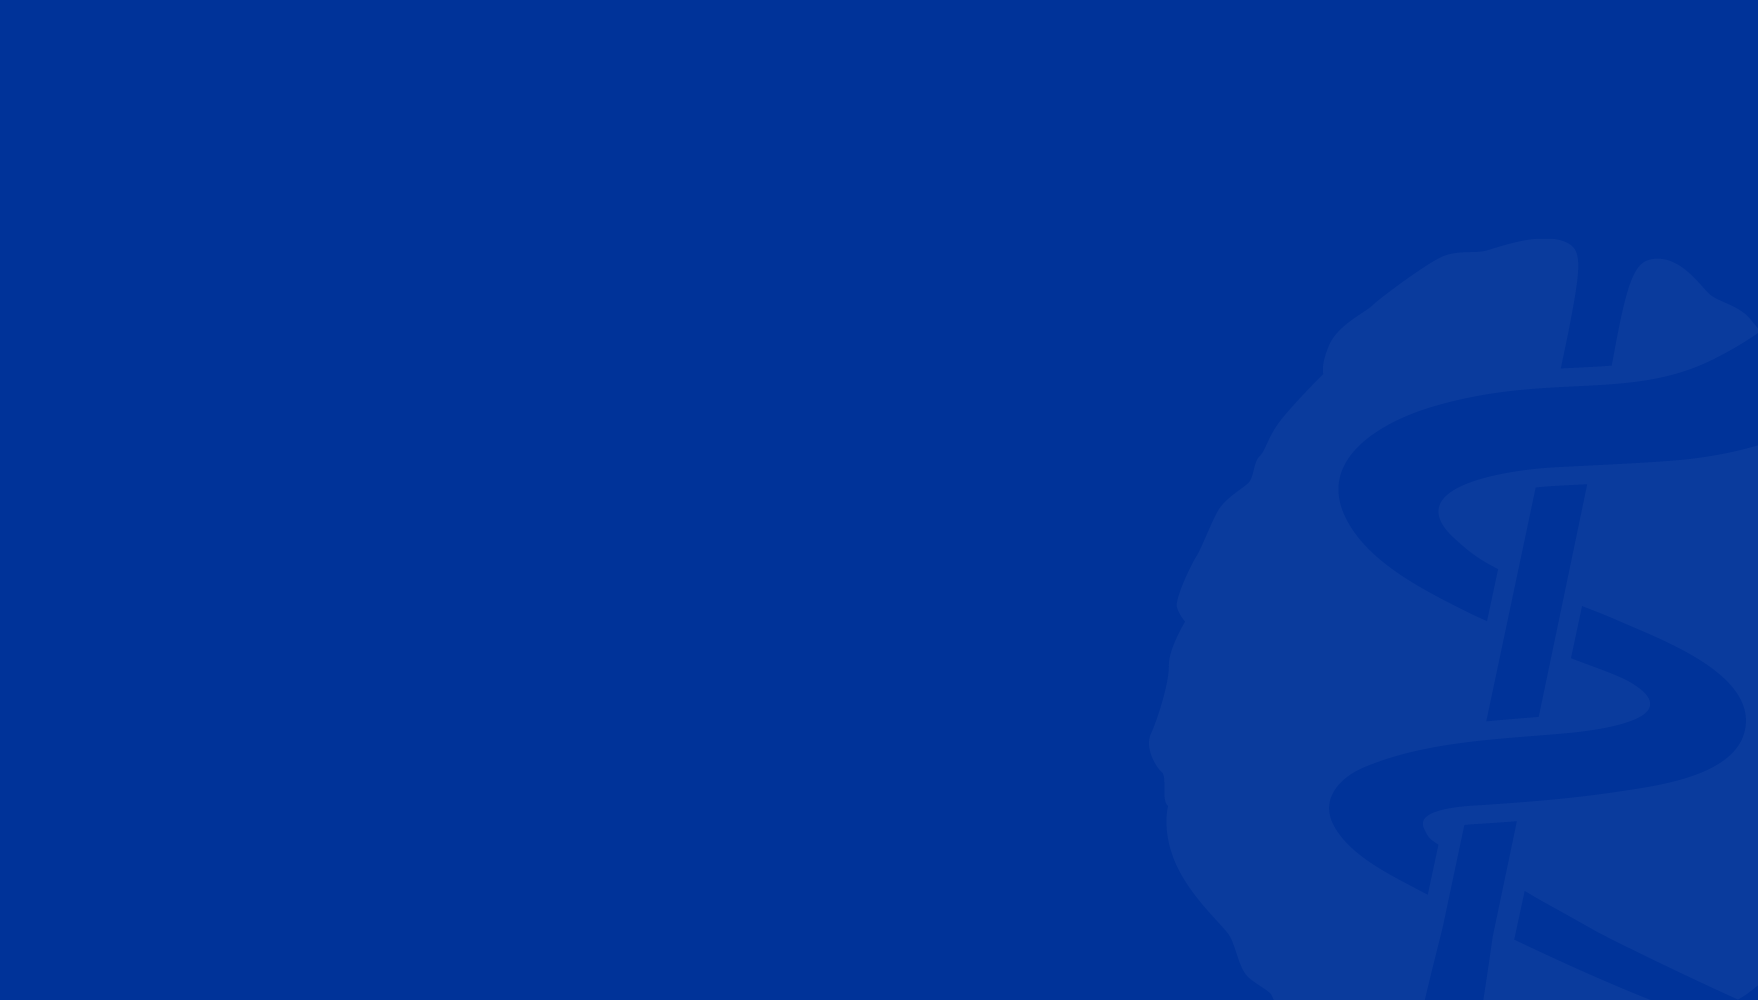 APA logo on blue background